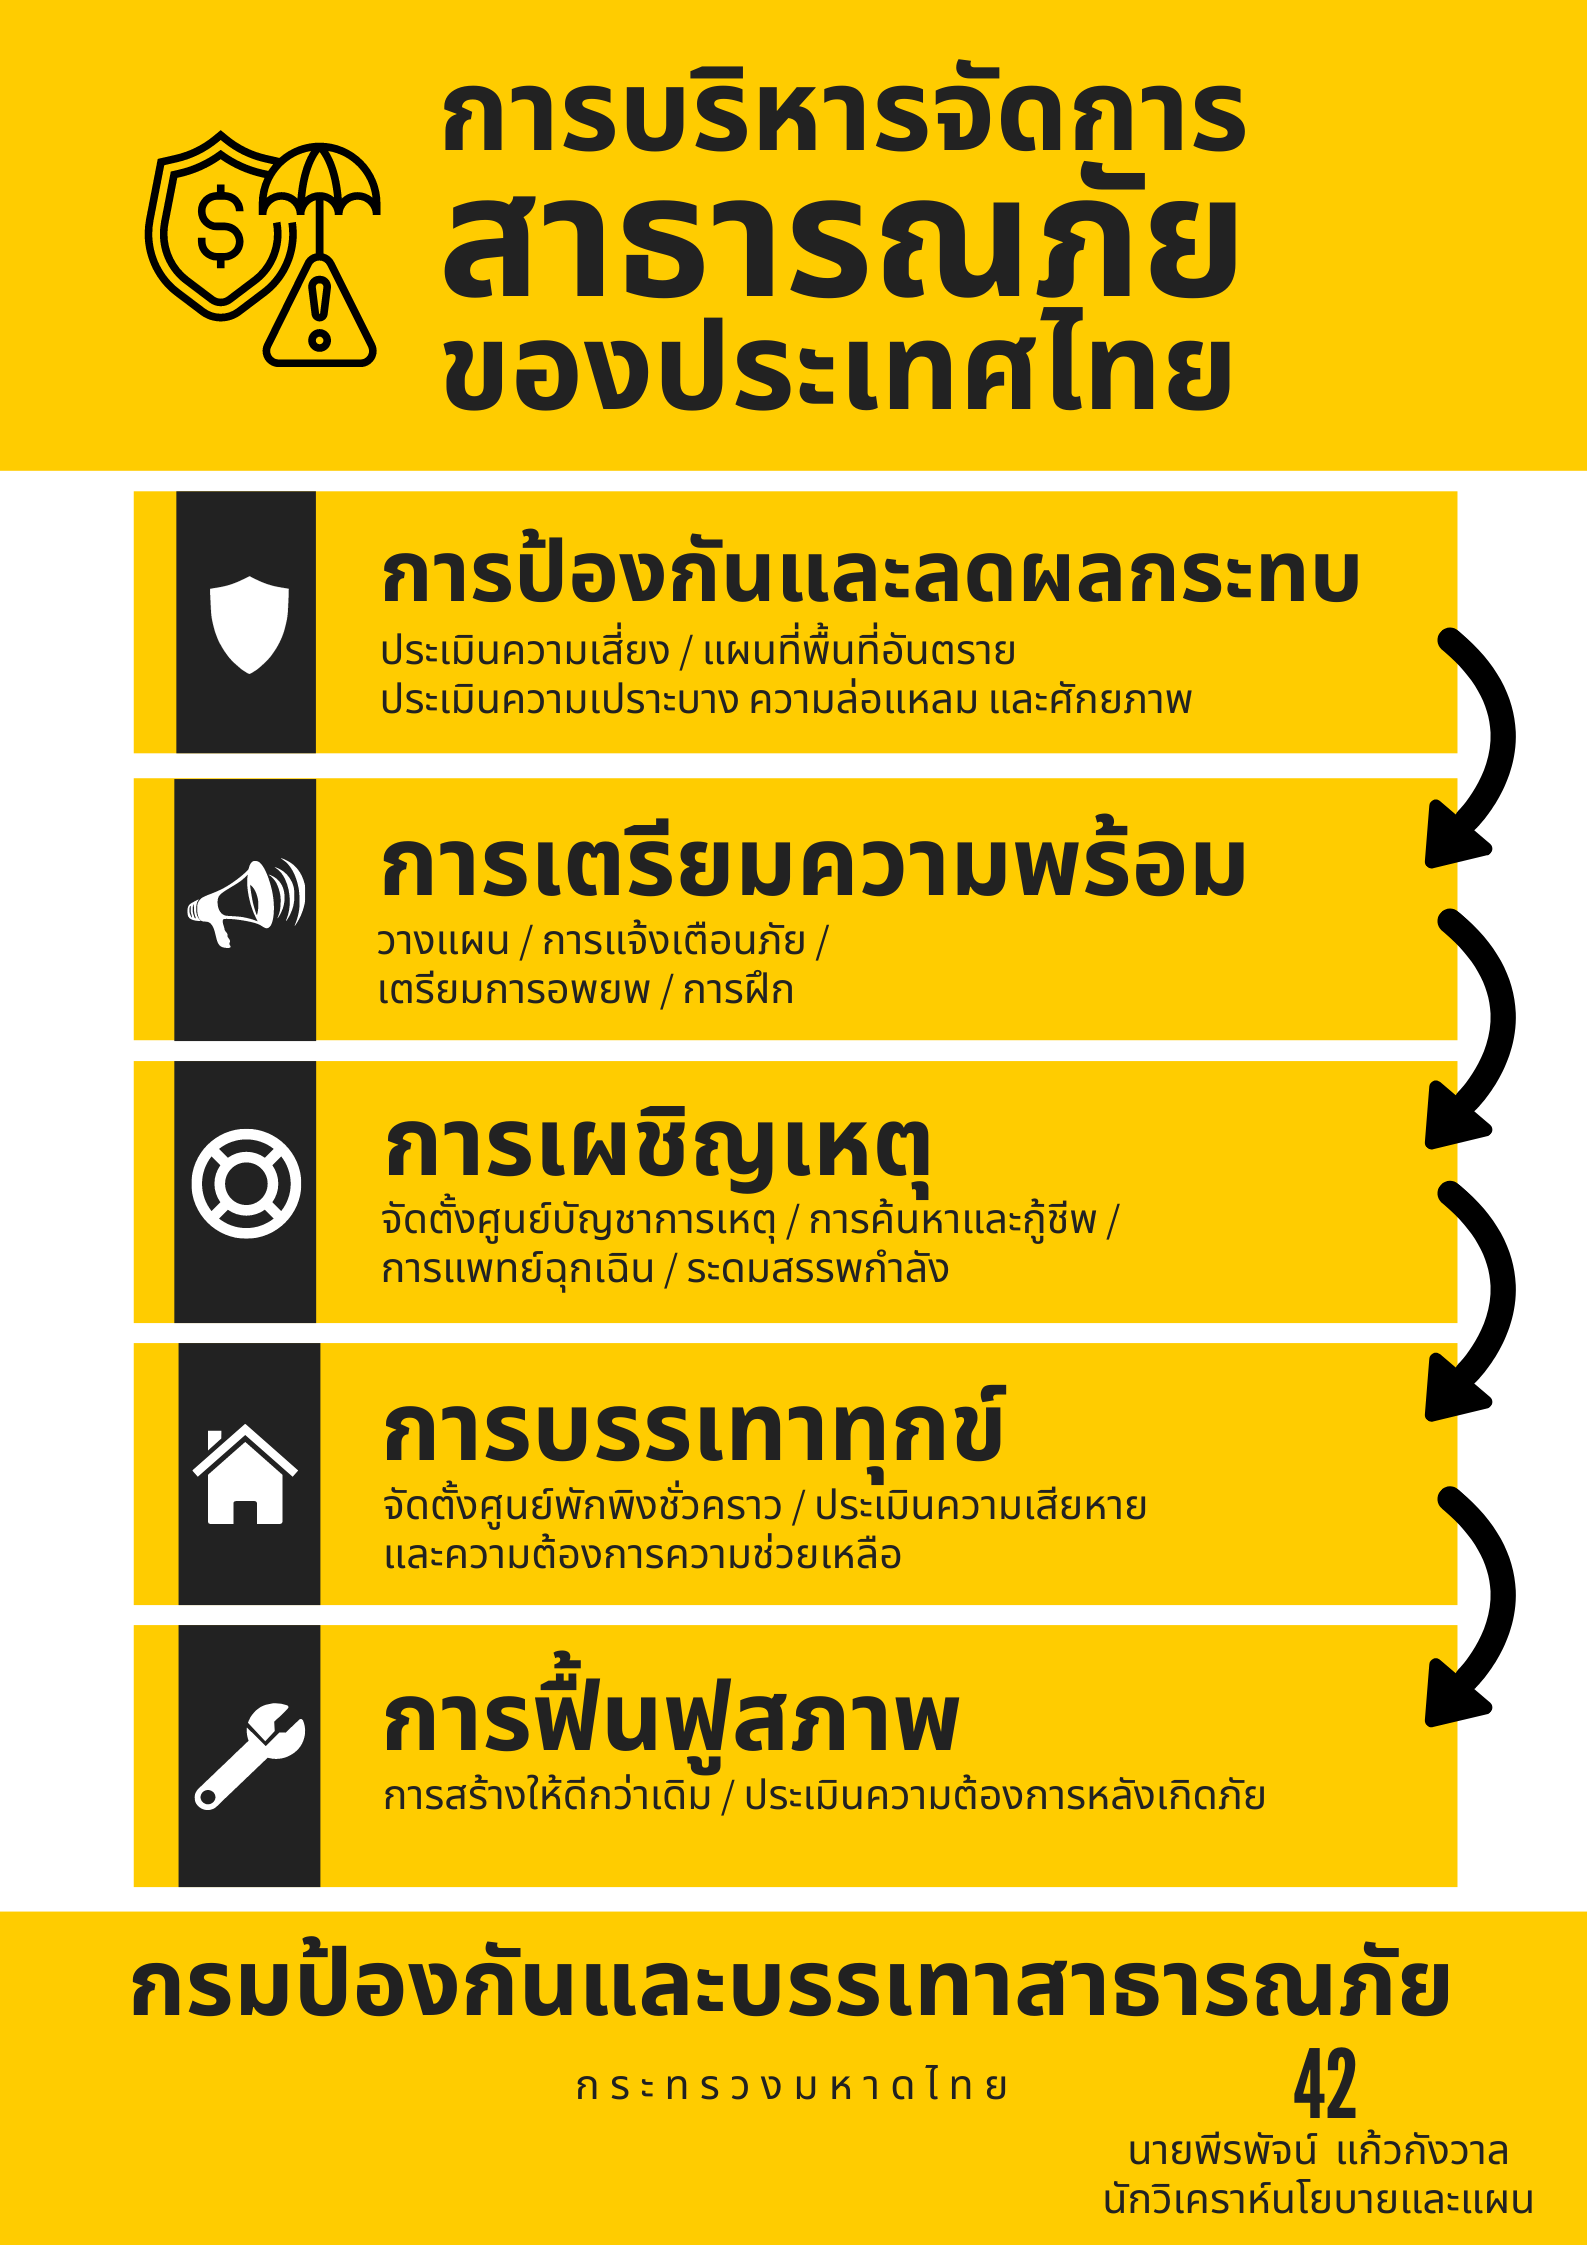 2 พีรพัจน์ แก้วกังวาล - การบริหารจัดการสาธารณภัยของประเทศไทย